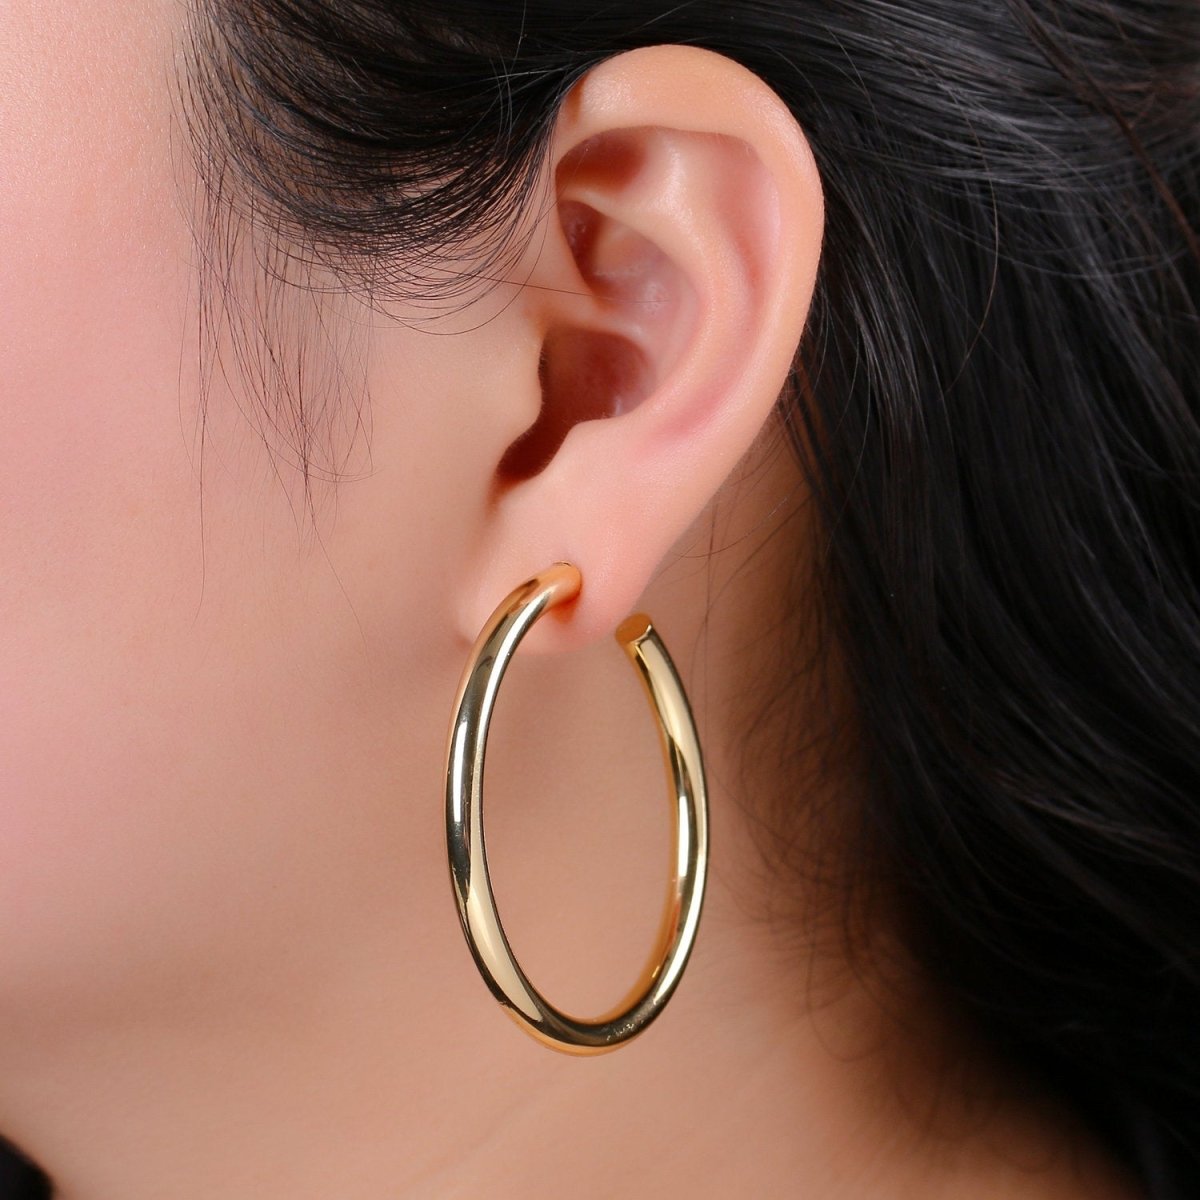 50mm Gold Thick Hoop Earrings, Gold Vermeil Hoop Earrings, Statement Hoops, Tube Hoop Earrings, Large Hoop Earrings, Big Hoop Earrings Q-315 - DLUXCA